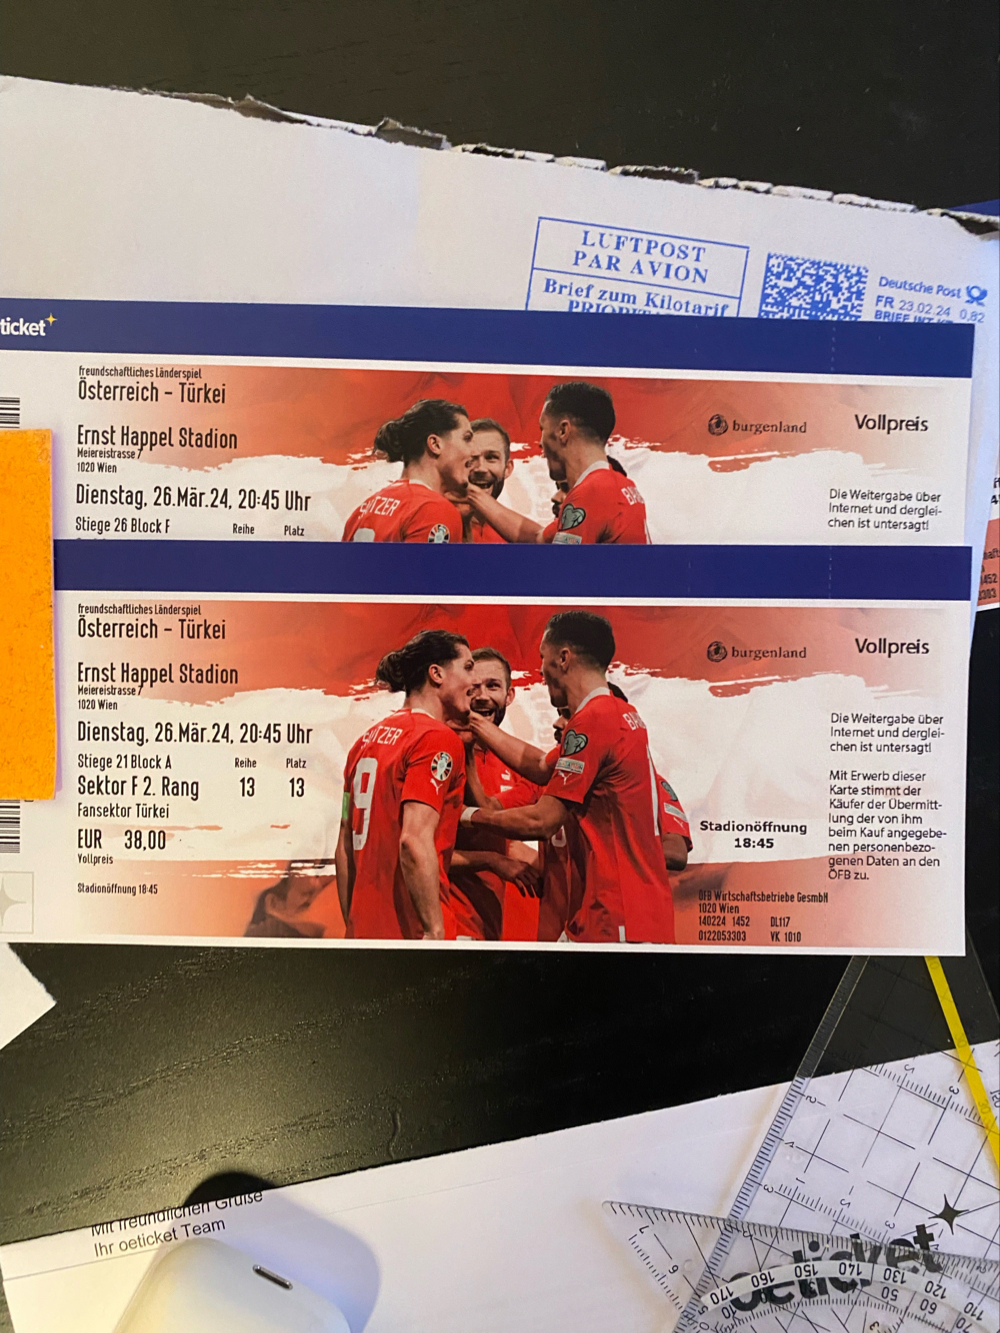 VERKAUFE Österreich-Türkei Tickets